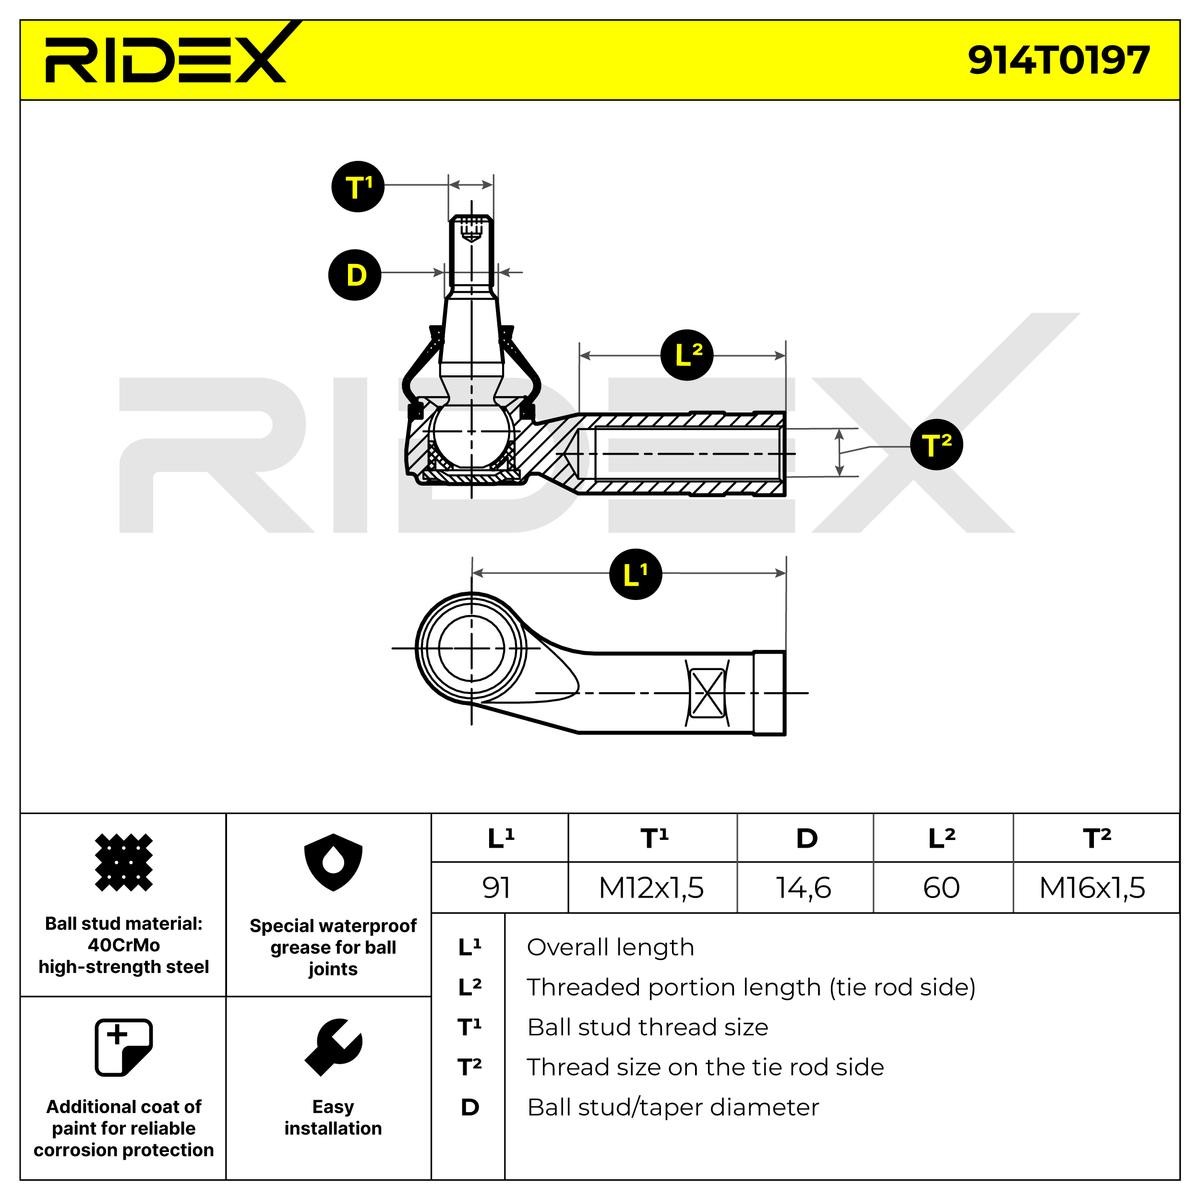 Article № 914T0197 RIDEX prices